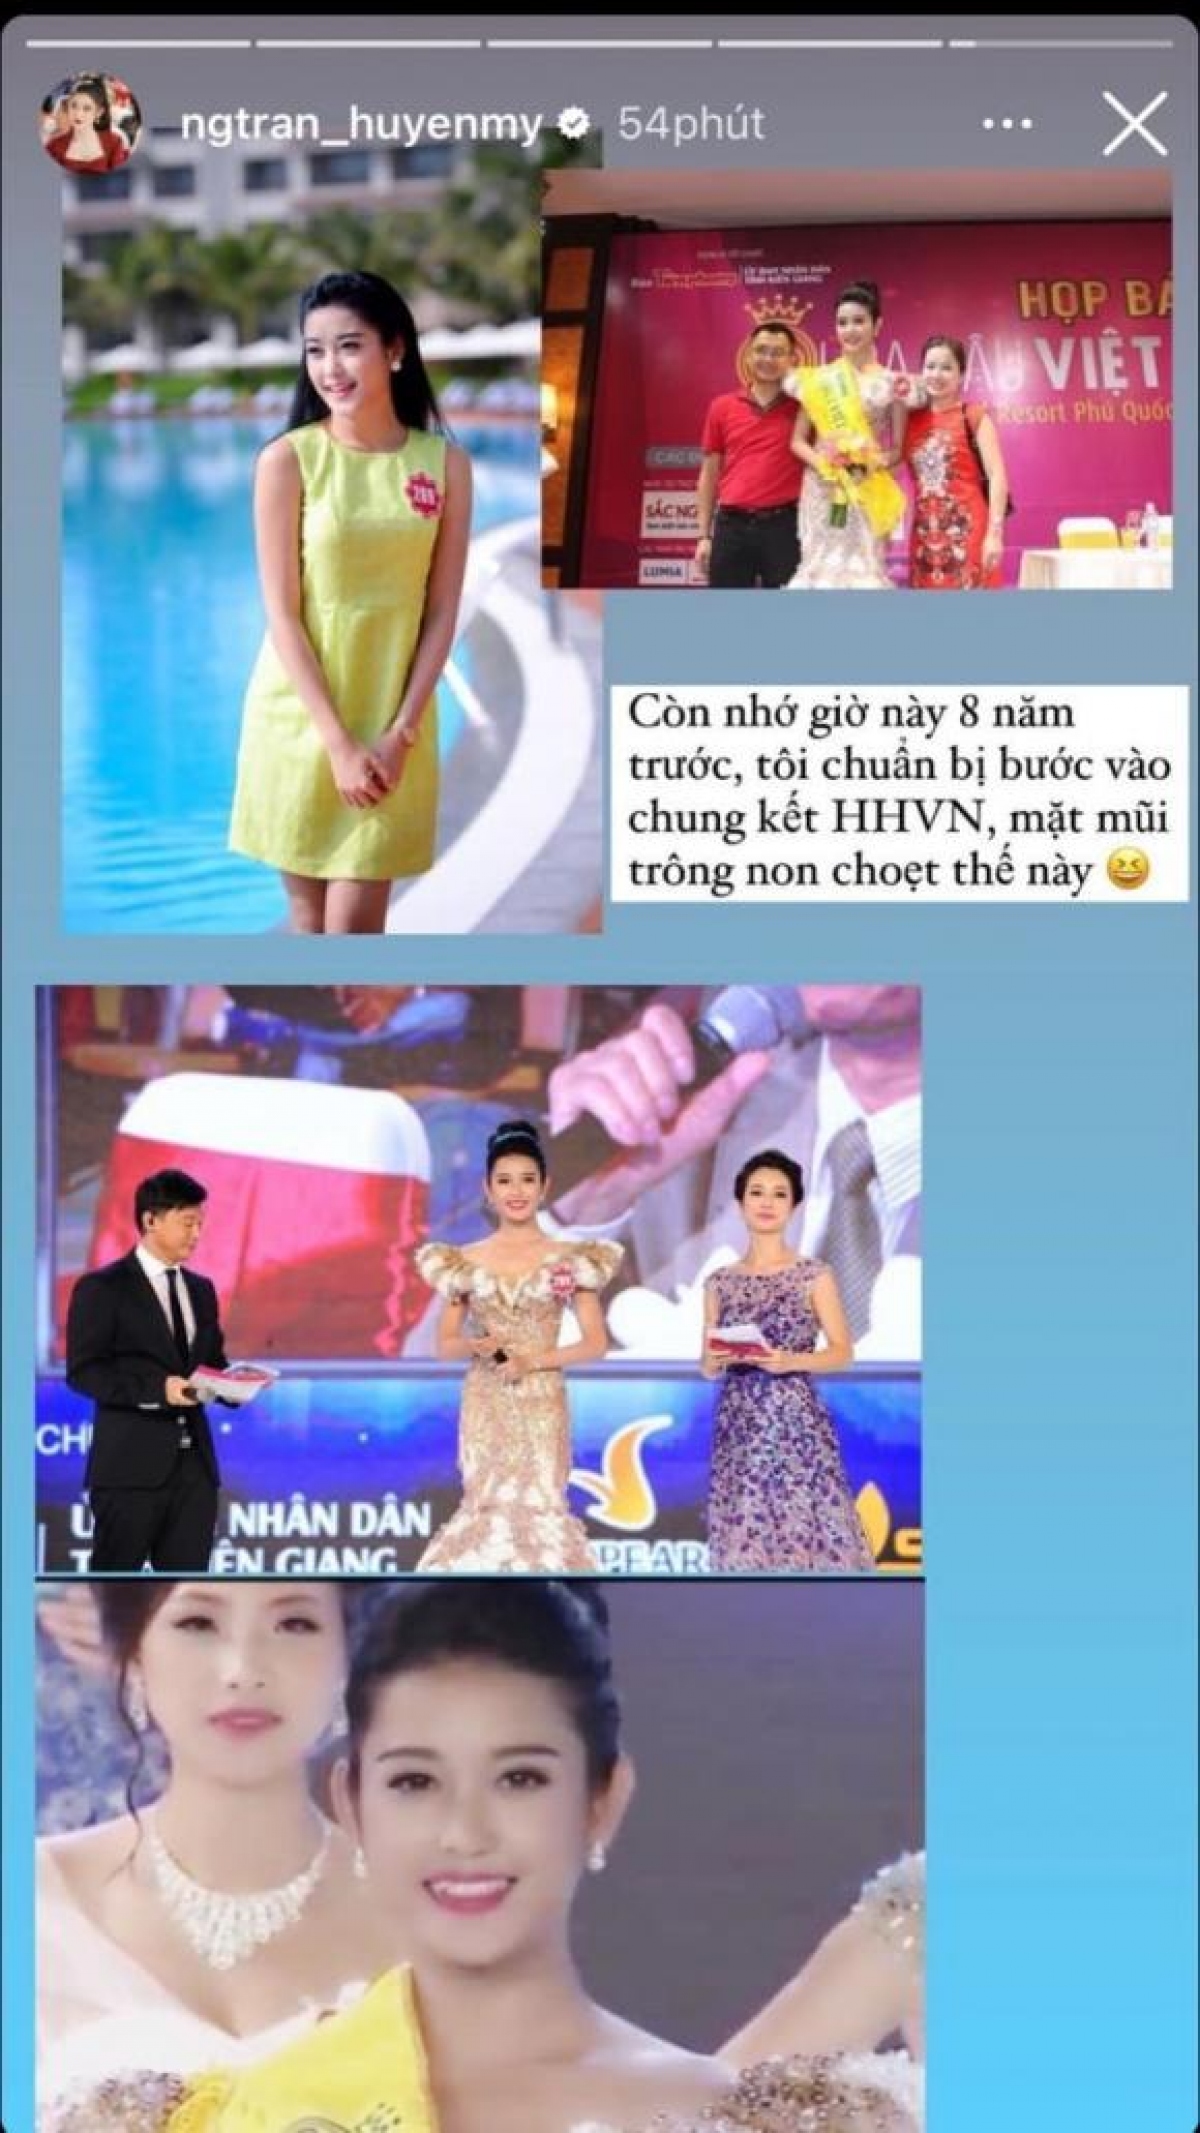 Huyền My bồi hồi nhớ lại thời điểm đi thi Hoa hậu Việt Nam 8 năm trước - Ảnh 1.